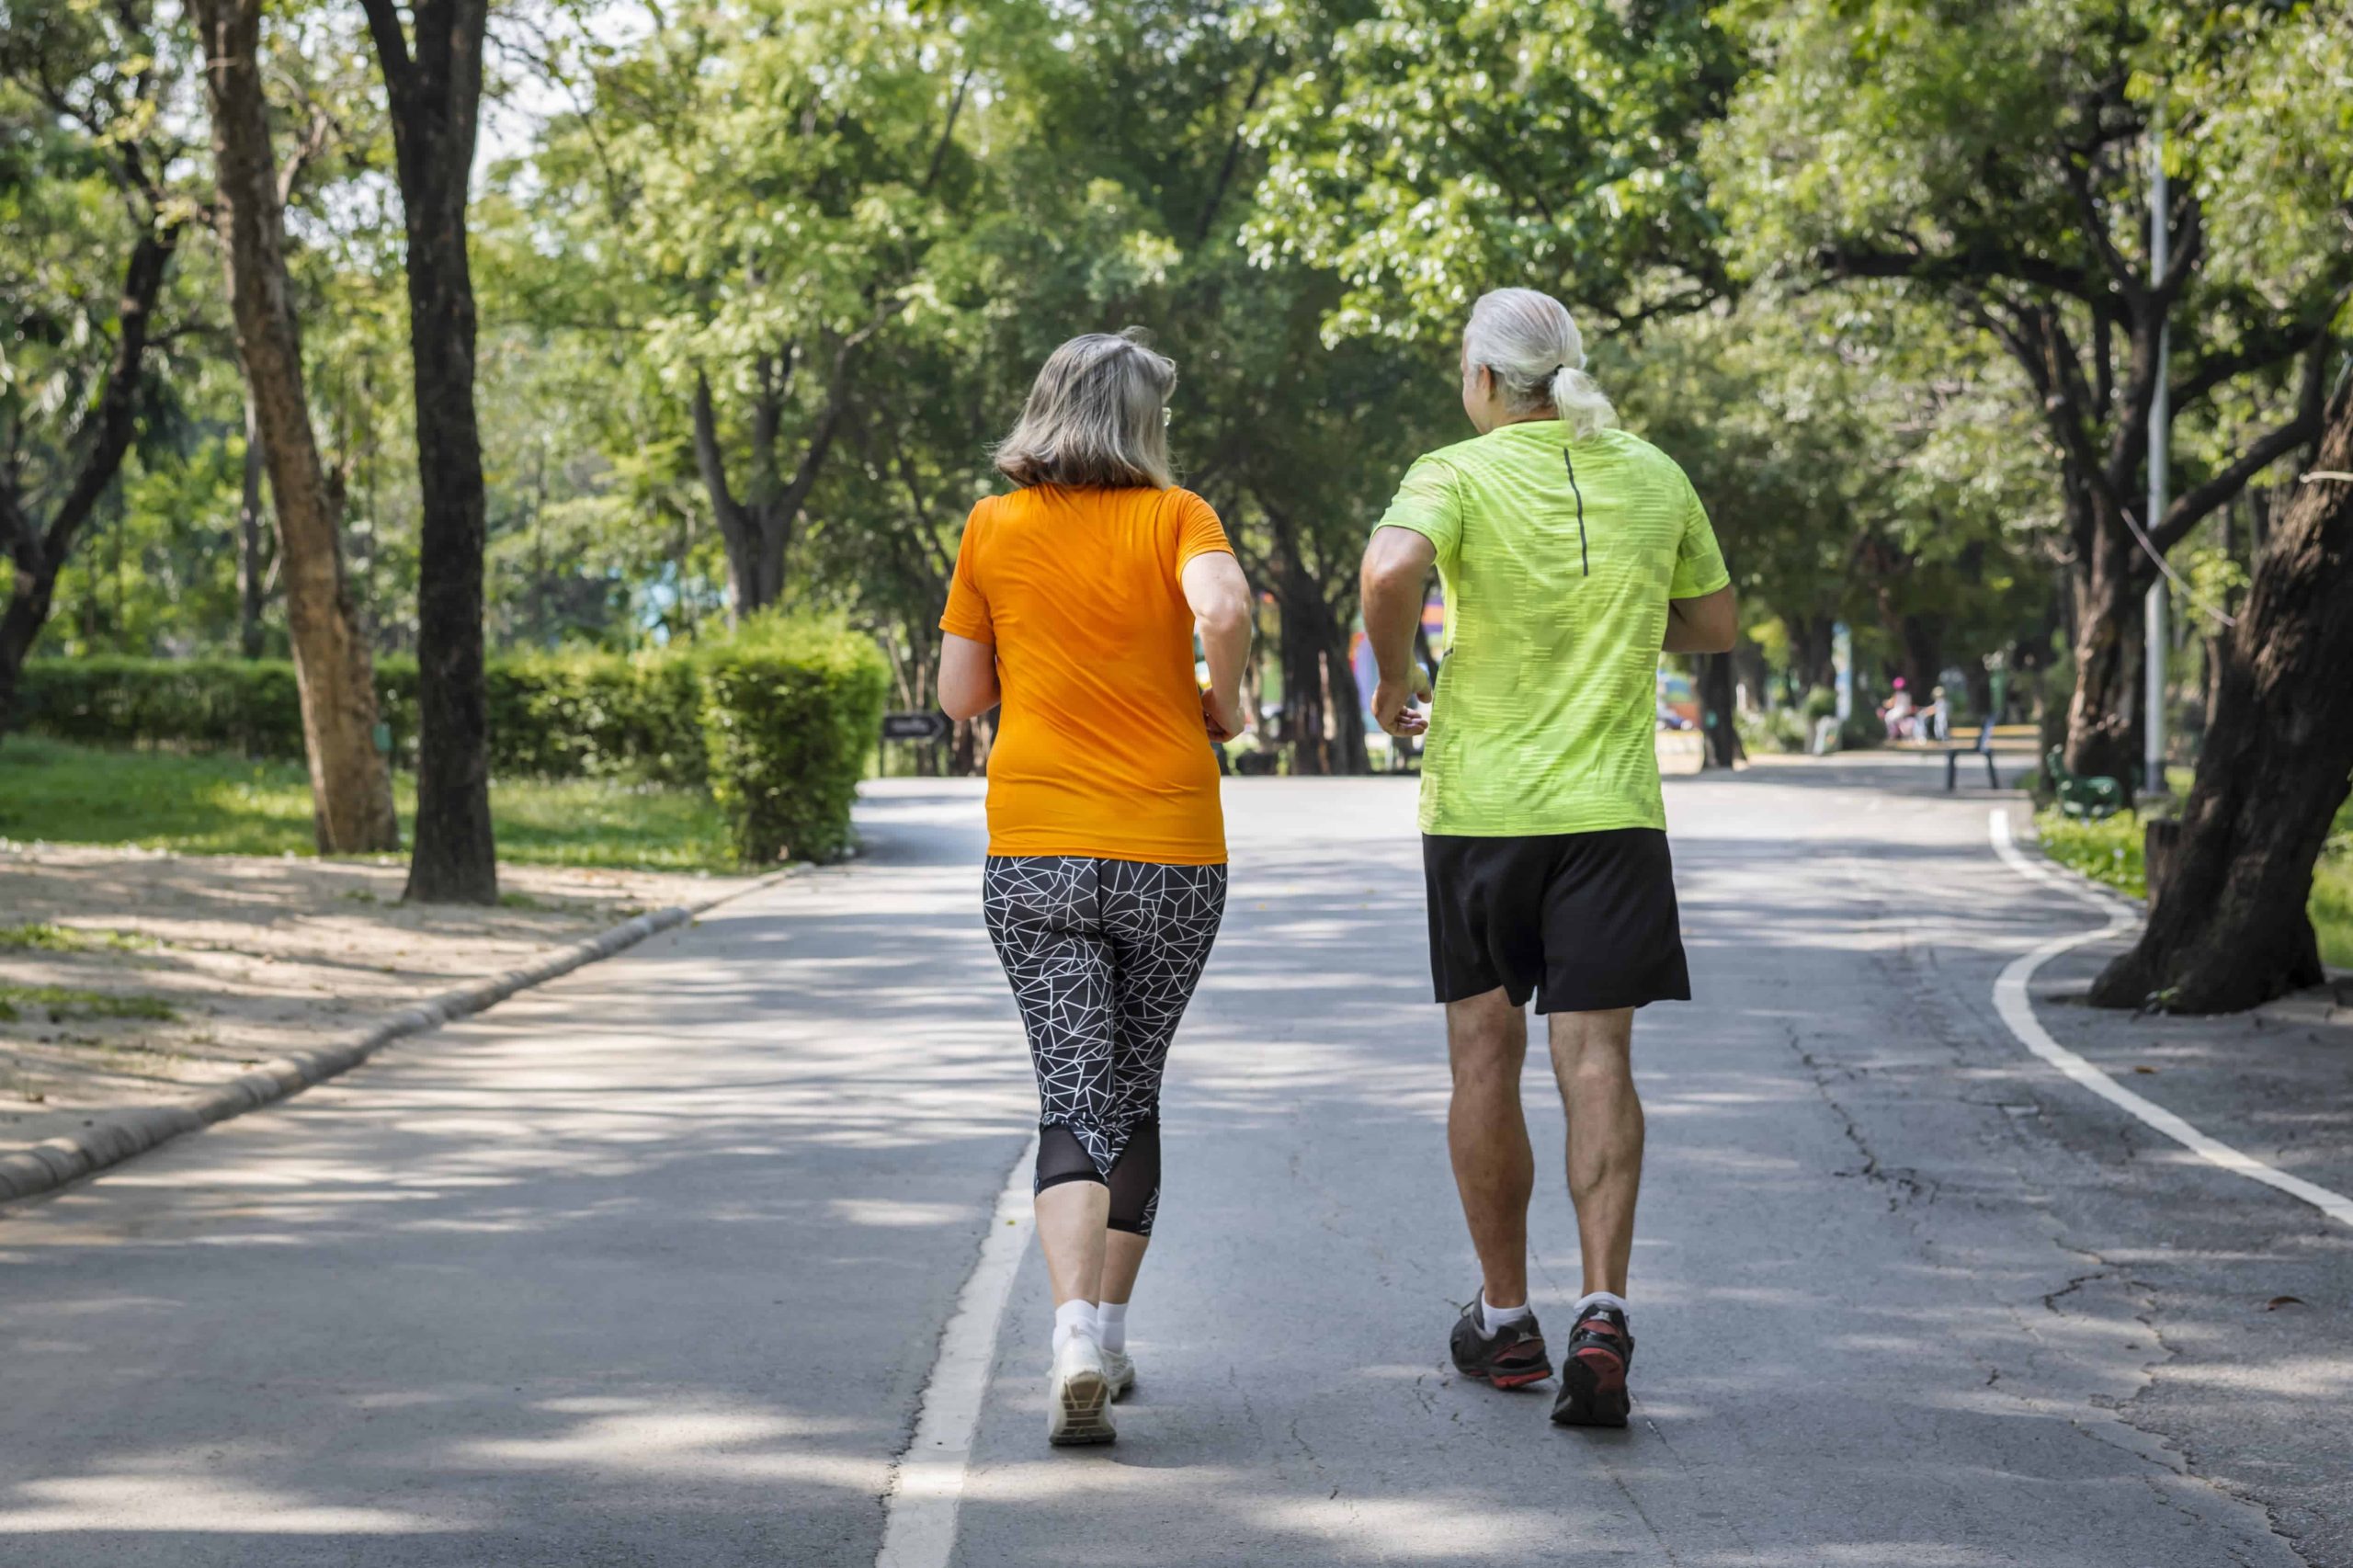 Bieganie dla seniorów – jak trenować, aby uniknąć kontuzji?